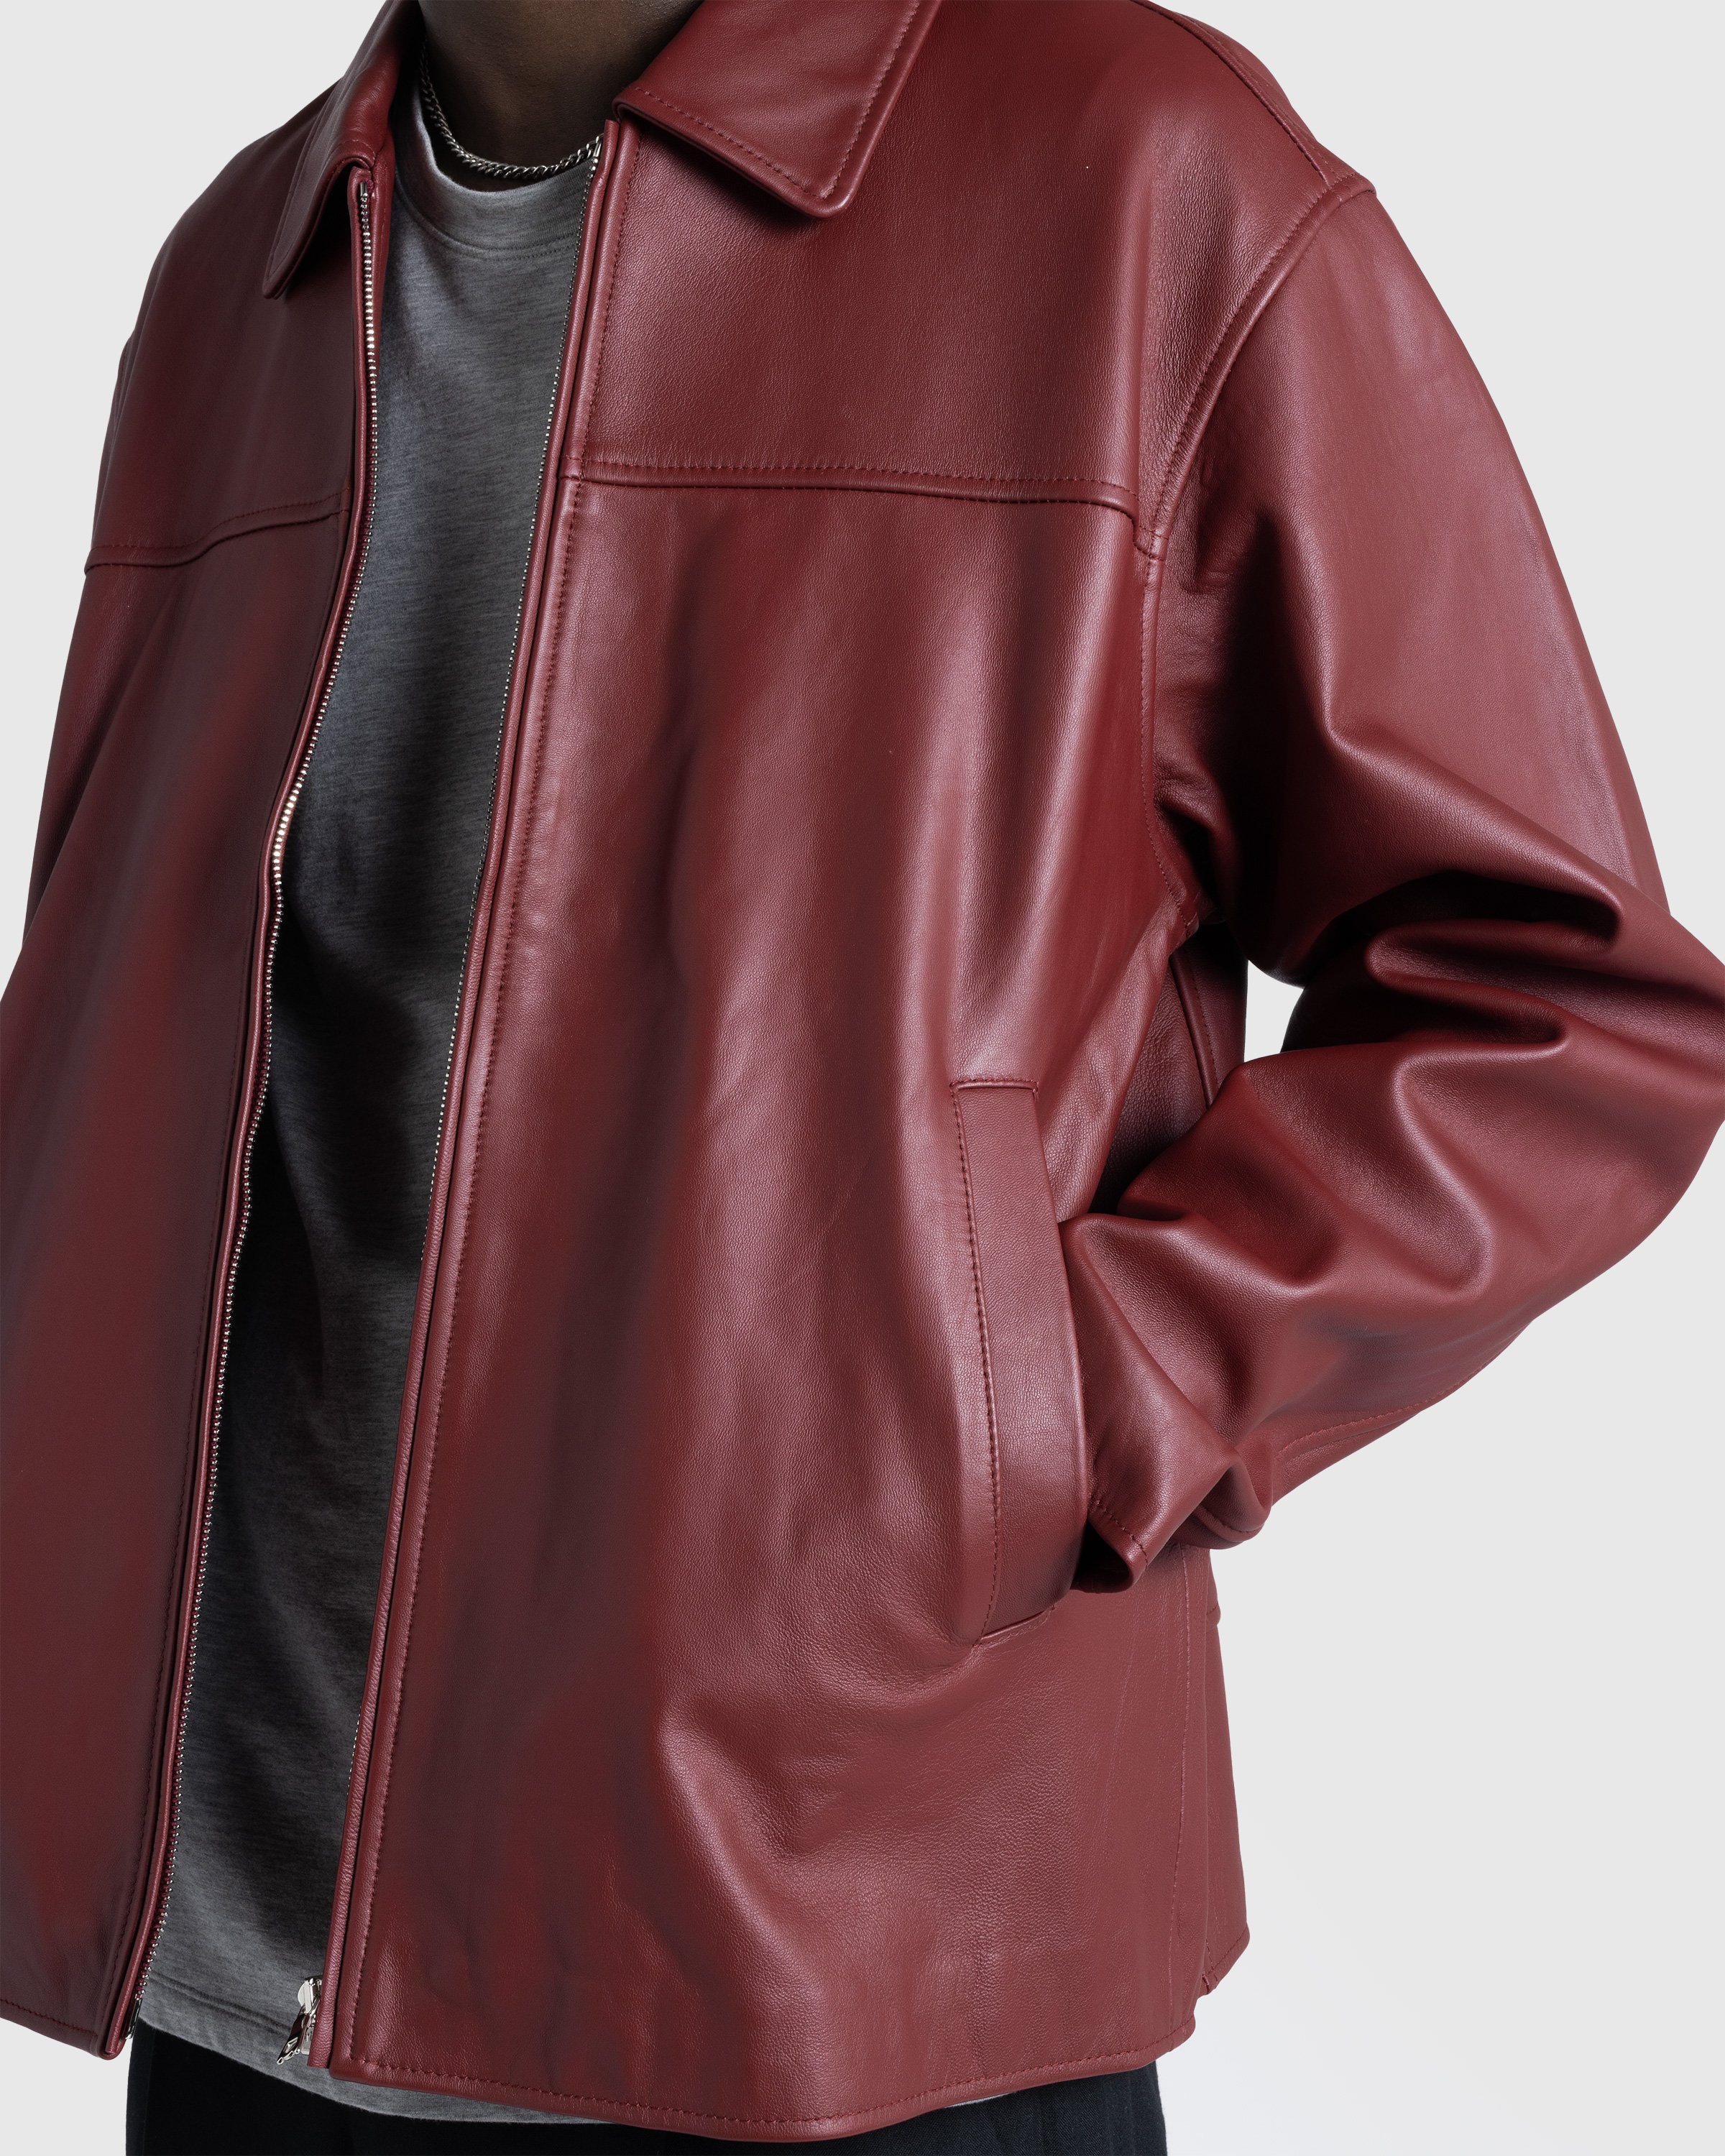 Highsnobiety HS05 - Leather Jacket Burgundy - Clothing - Burgundy - Image 8